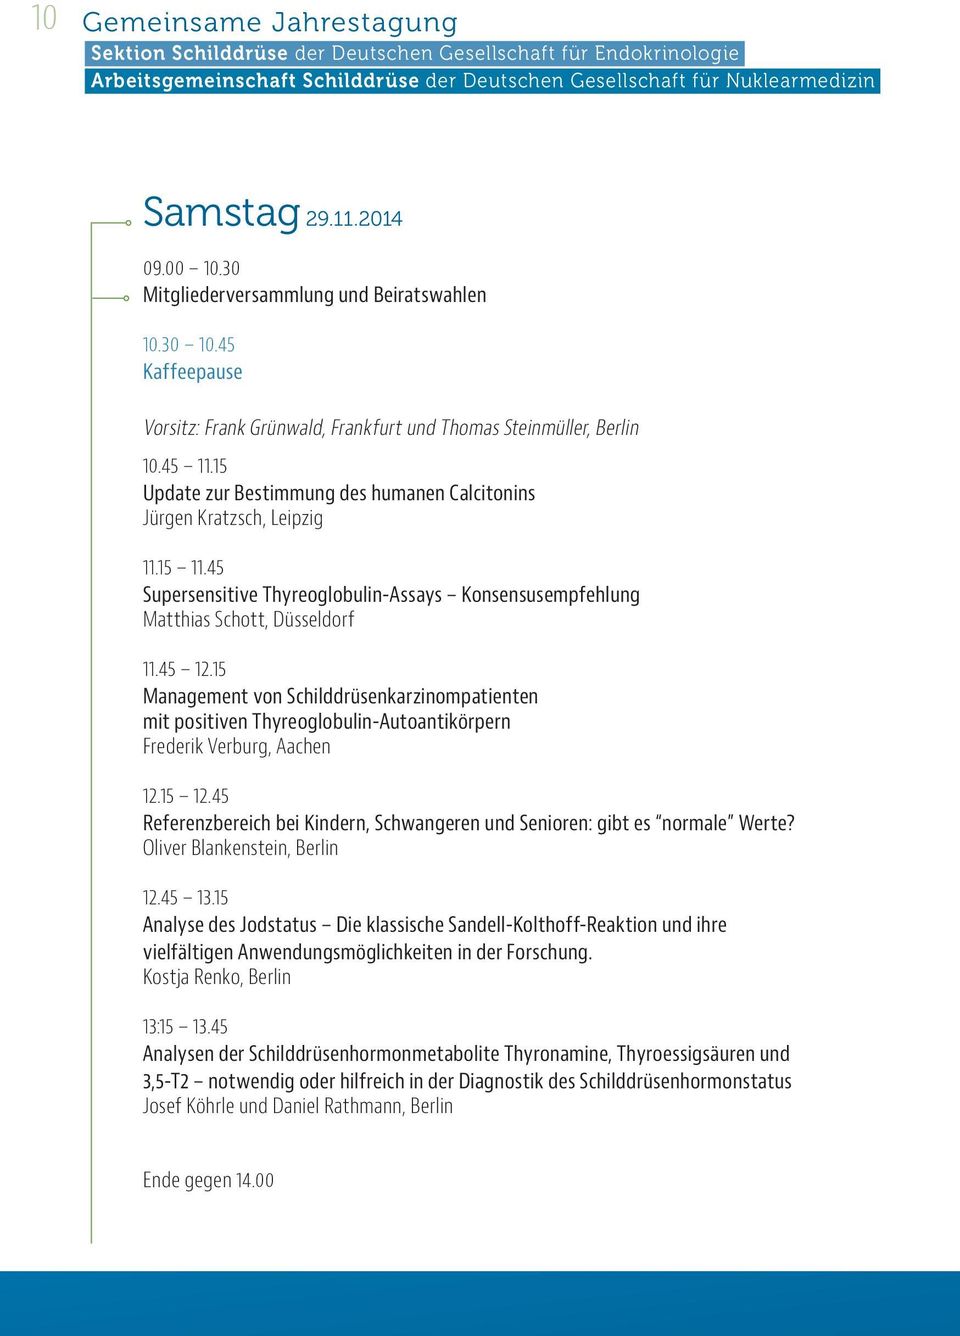 15 Management von Schilddrüsenkarzinompatienten mit positiven Thyreoglobulin-Autoantikörpern Frederik Verburg, Aachen 12.15 12.